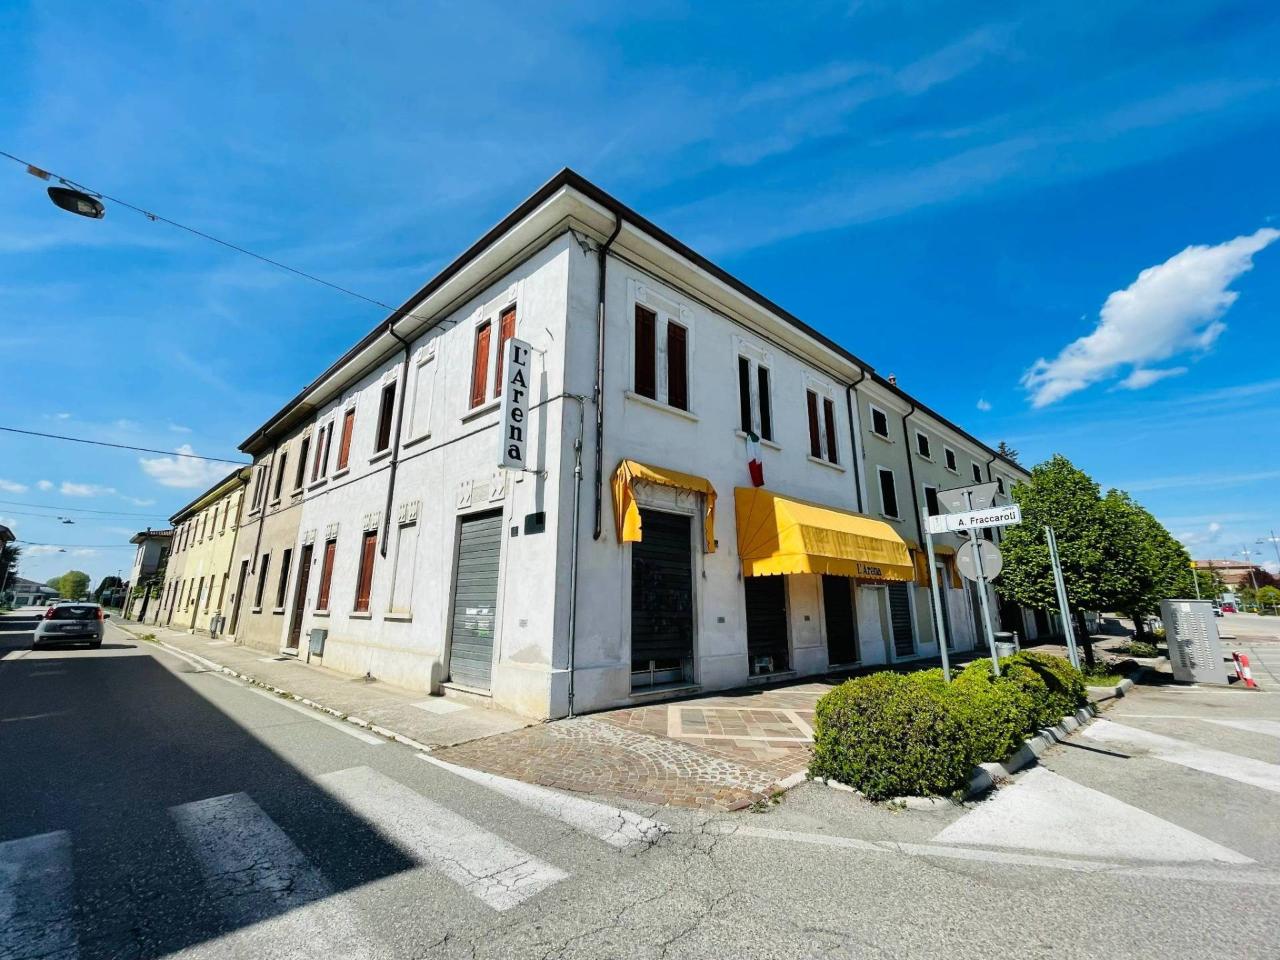 Casa indipendente in vendita a Legnago